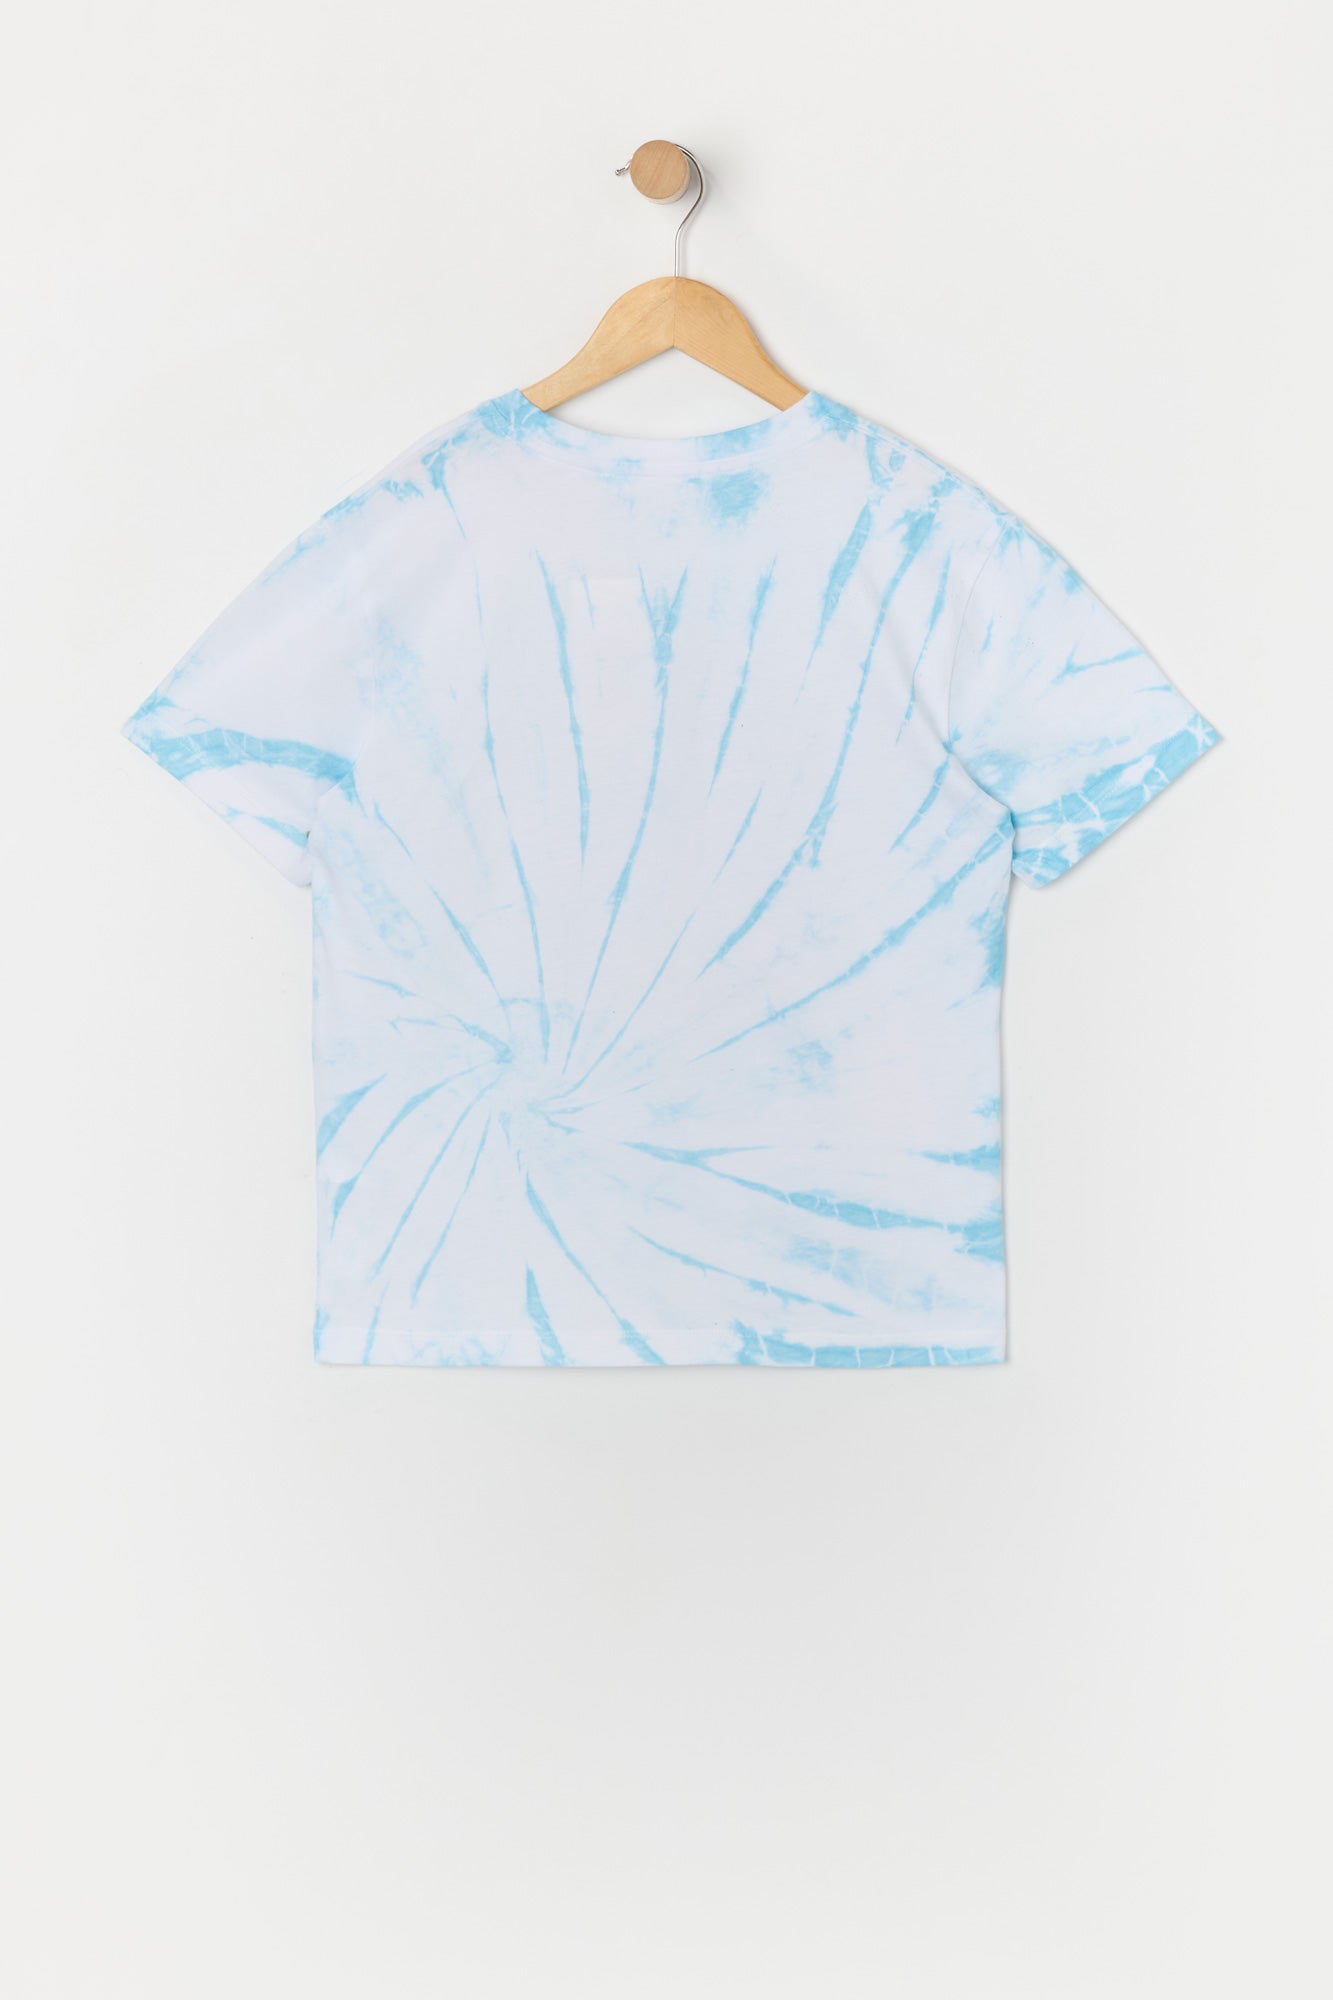 Girls Explore Nature Graphic Tie Dye T-Shirt